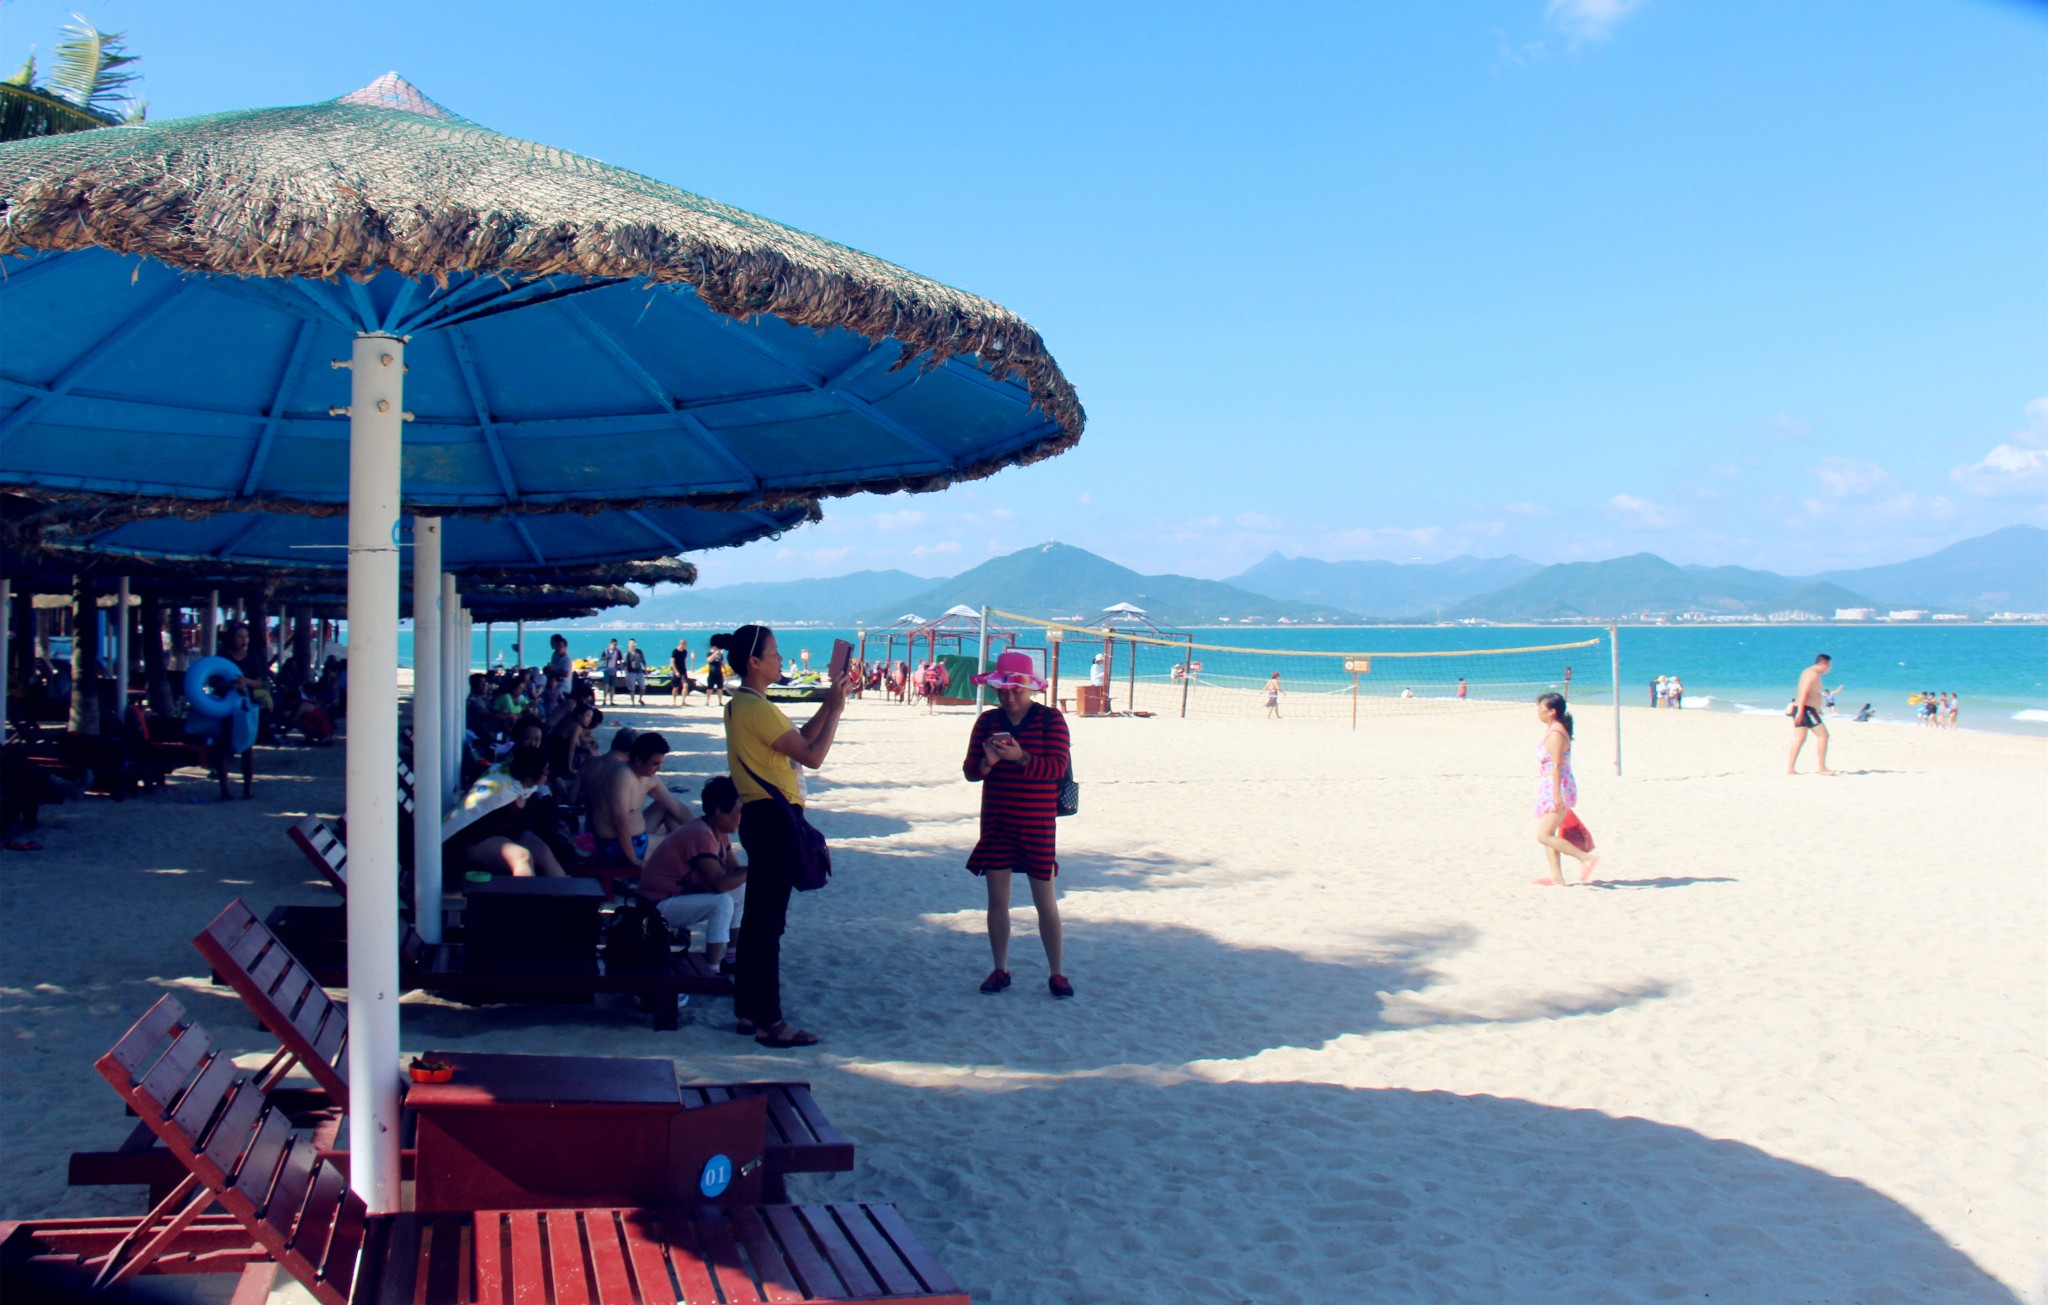 海上拖曳伞爱好者 西岛海滩休闲娱乐景区 西岛海景 能容纳数百人的